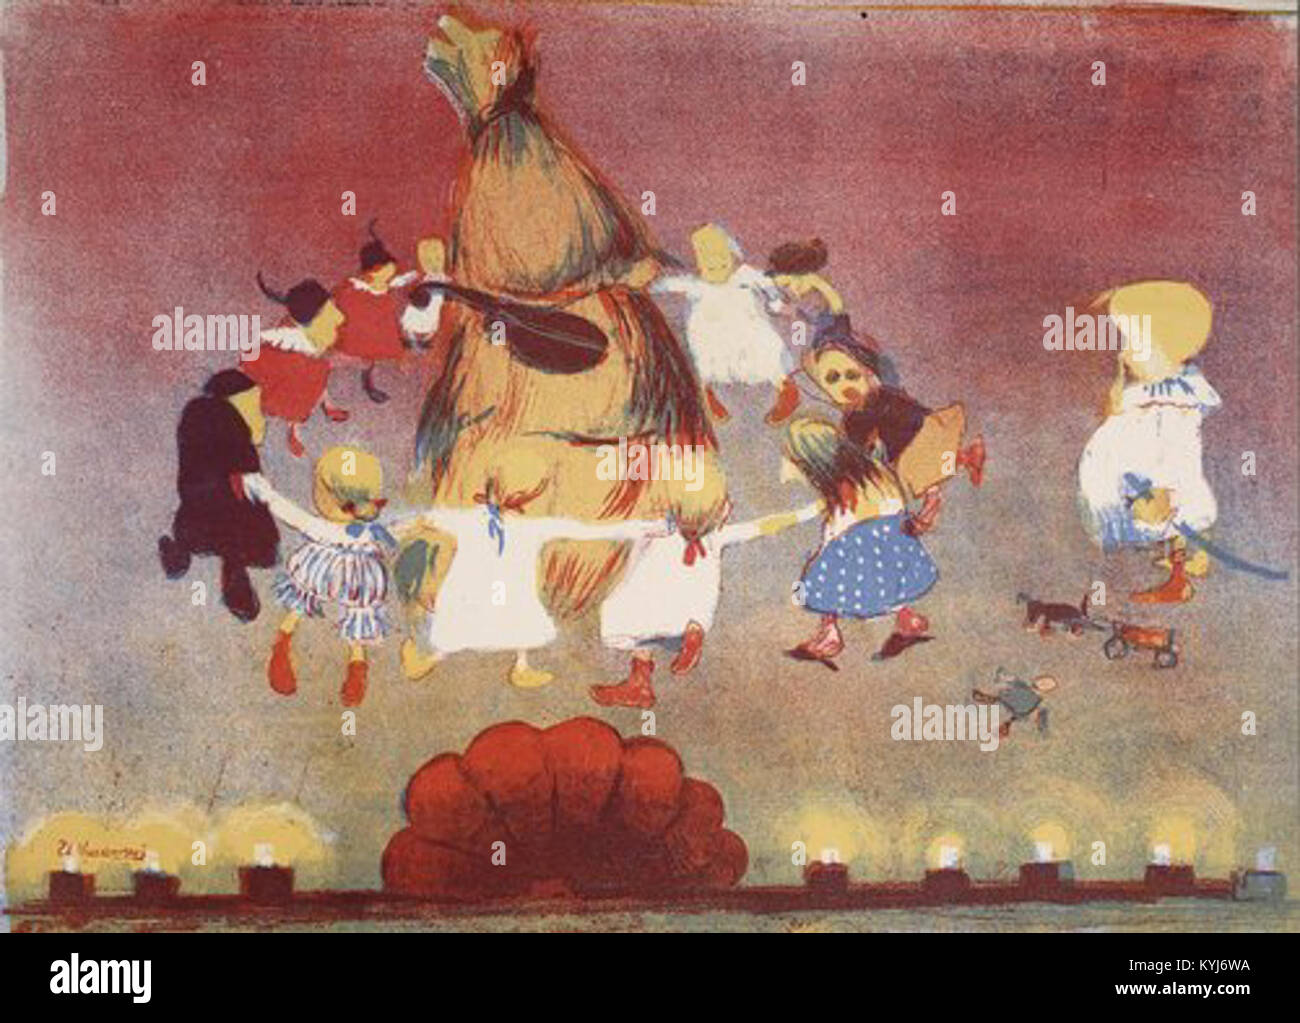 Stanisław Kuczborski Taniec wokół chochoła 1904 Stock Photo